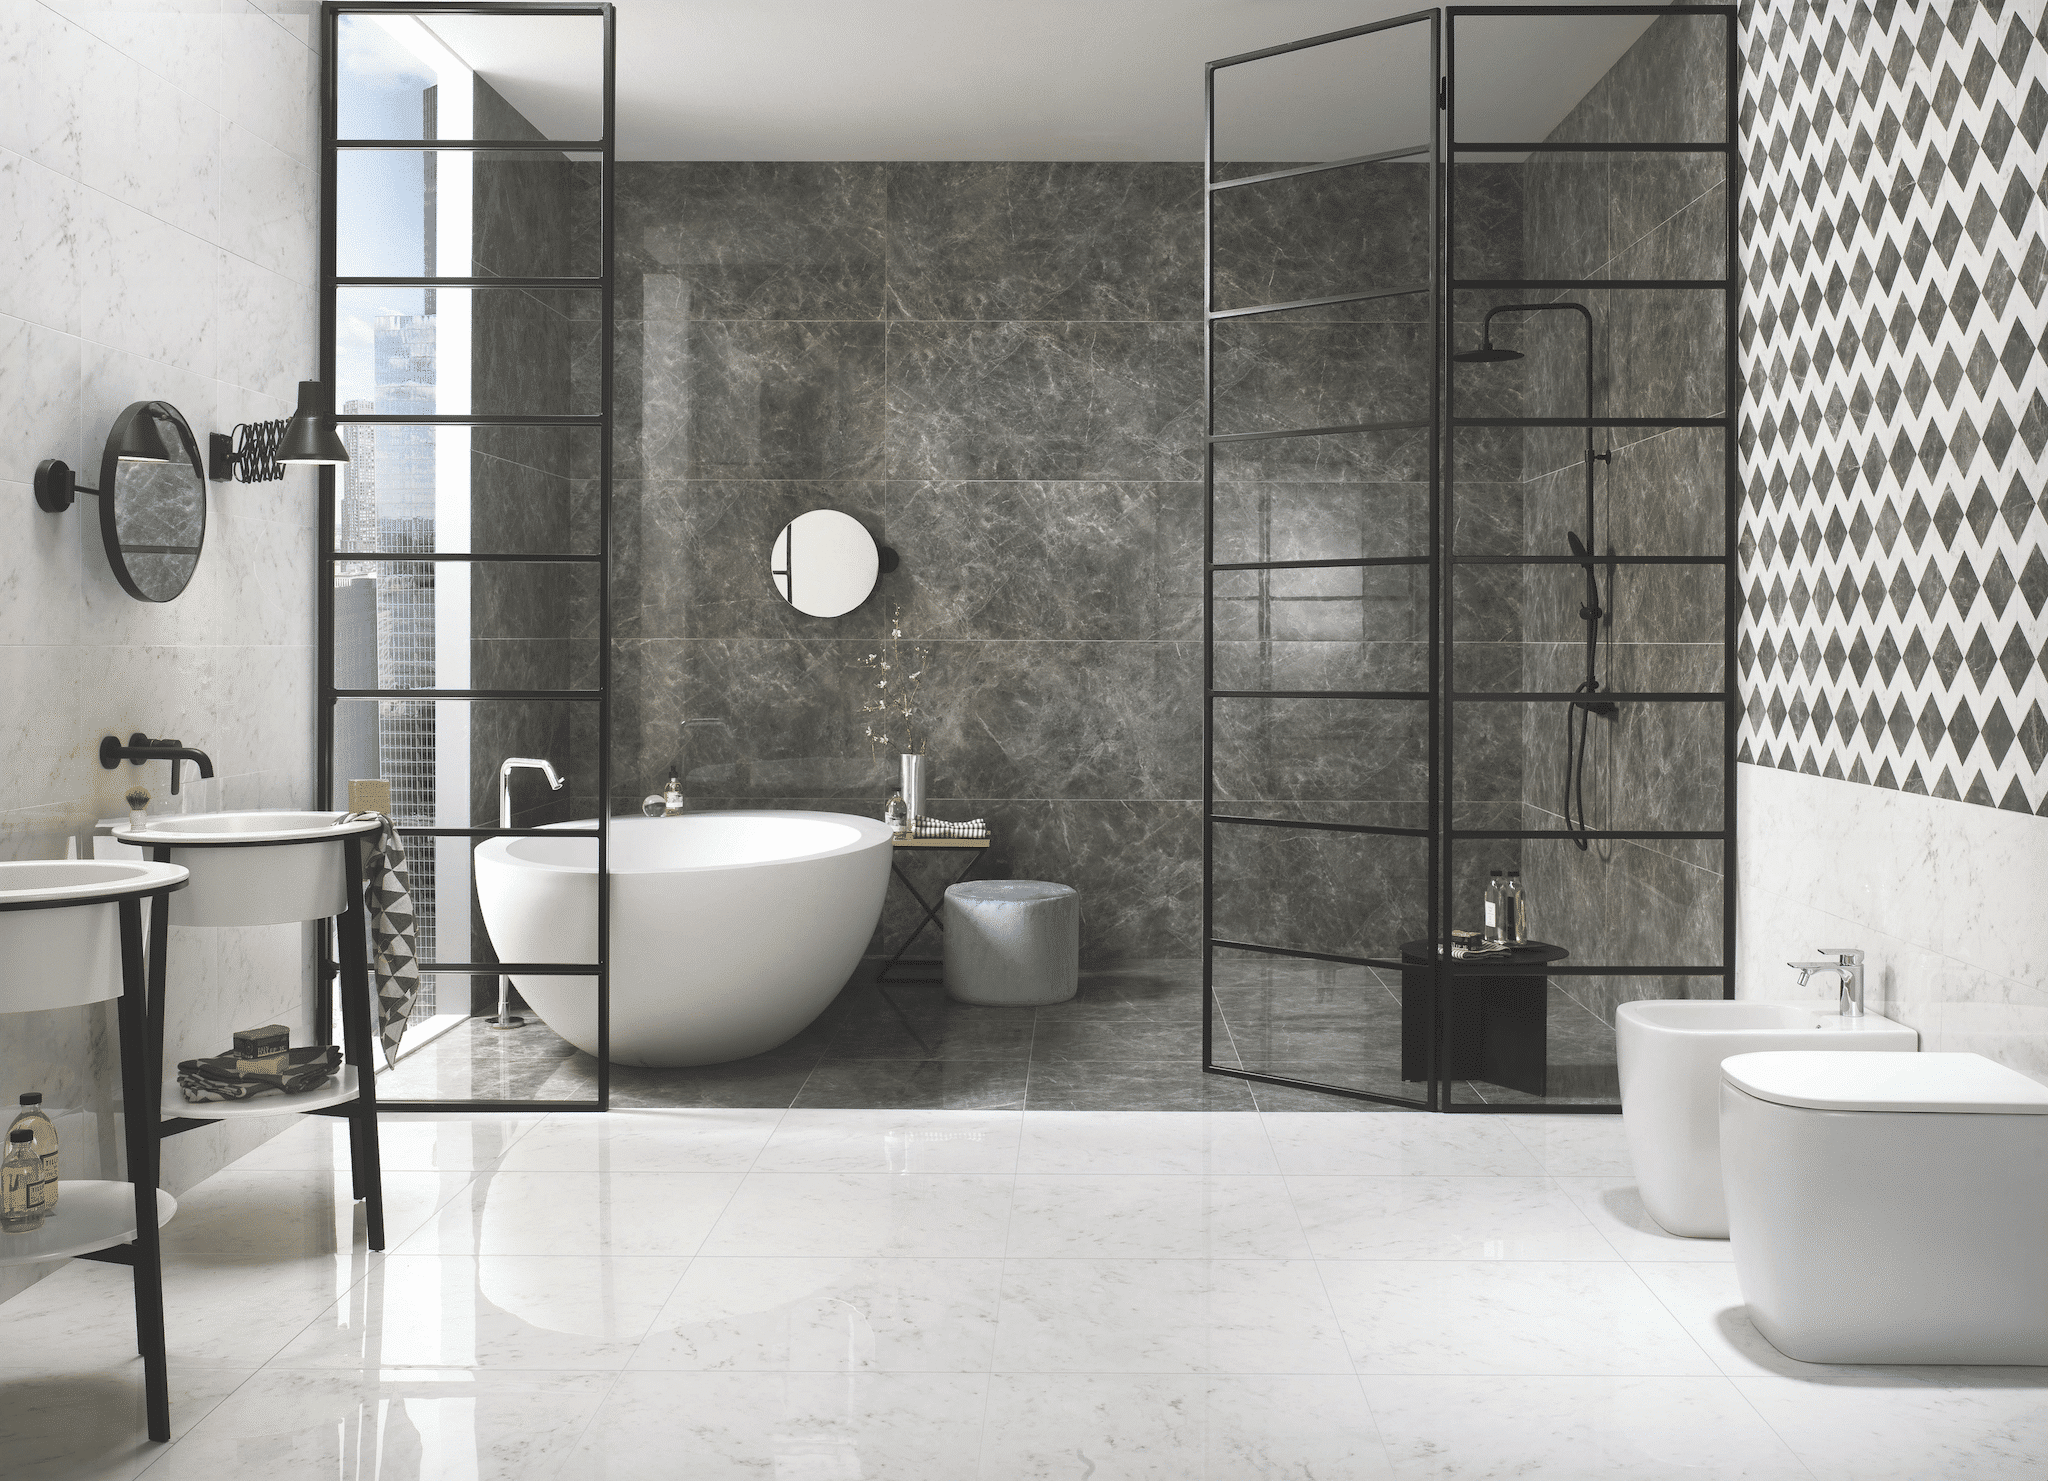 Helles, gefliestes Badezimmer mit Walkin-Dusche und freistehender Badewanne hinter einer Glaswand sowie Toiletten und Waschbecken vor dunkelgrauen Muster-Wandfliesen der Firma Fliesendorf.